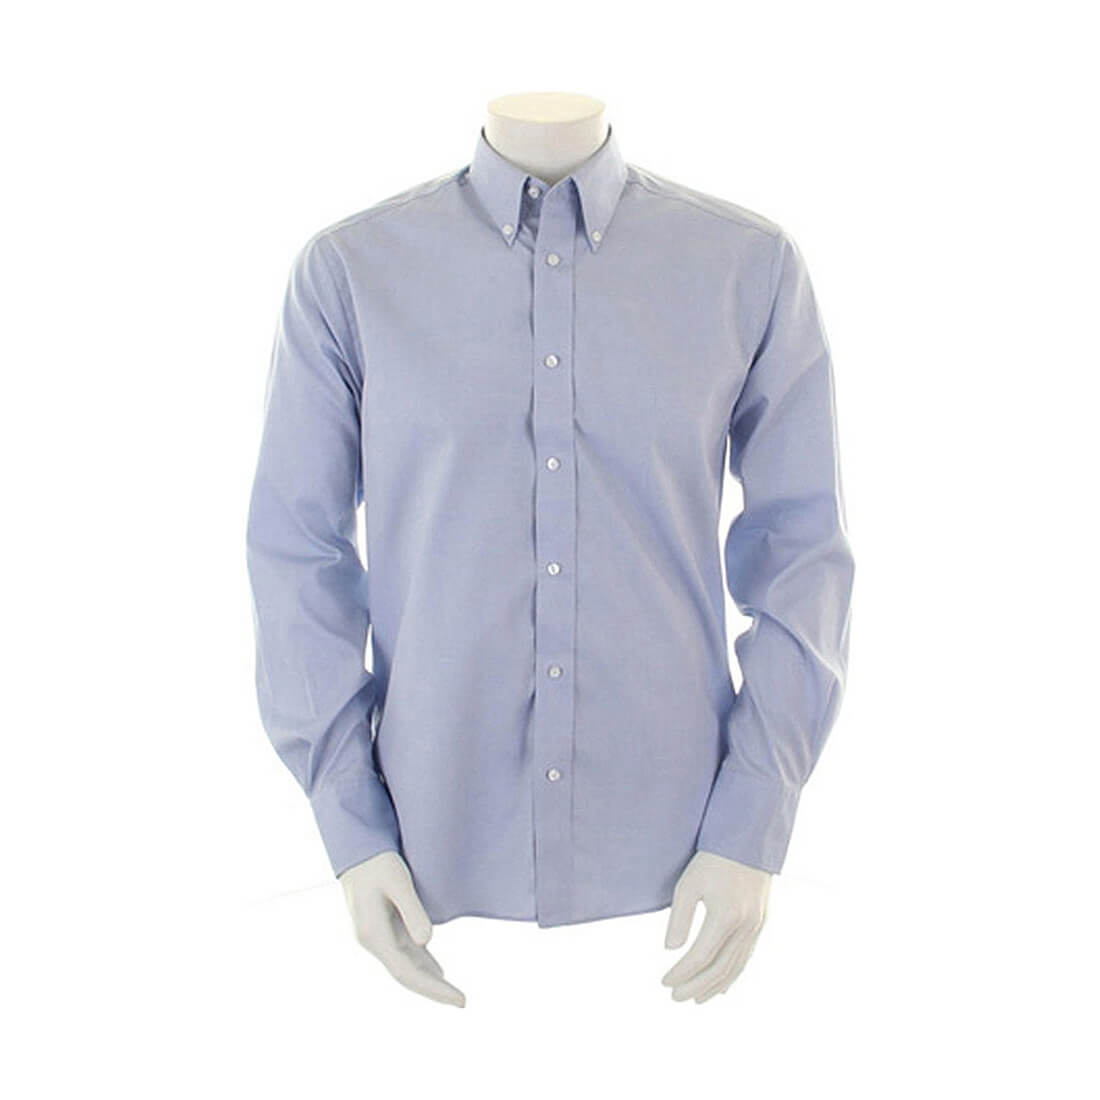 Tailored Fit Premium Oxford Shirt LS - Les vêtements de protection